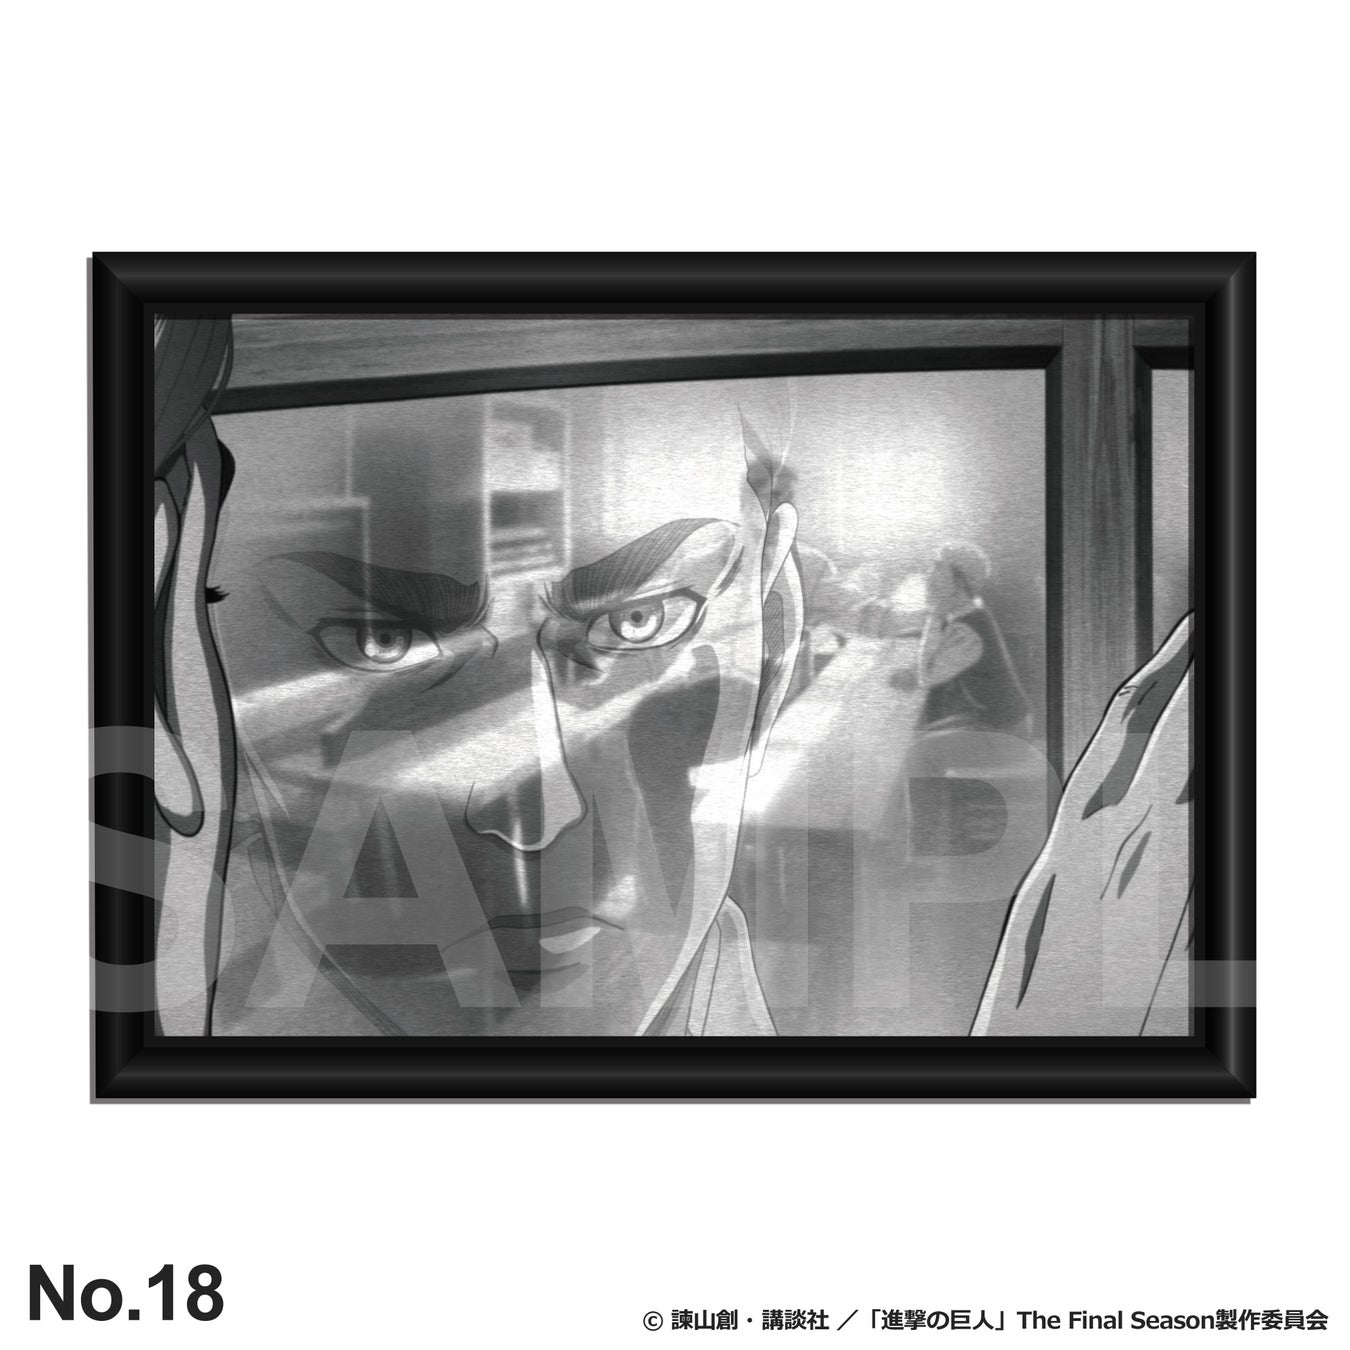 TVアニメ『進撃の巨人』より数量限定のアート作品 第2弾が登場！